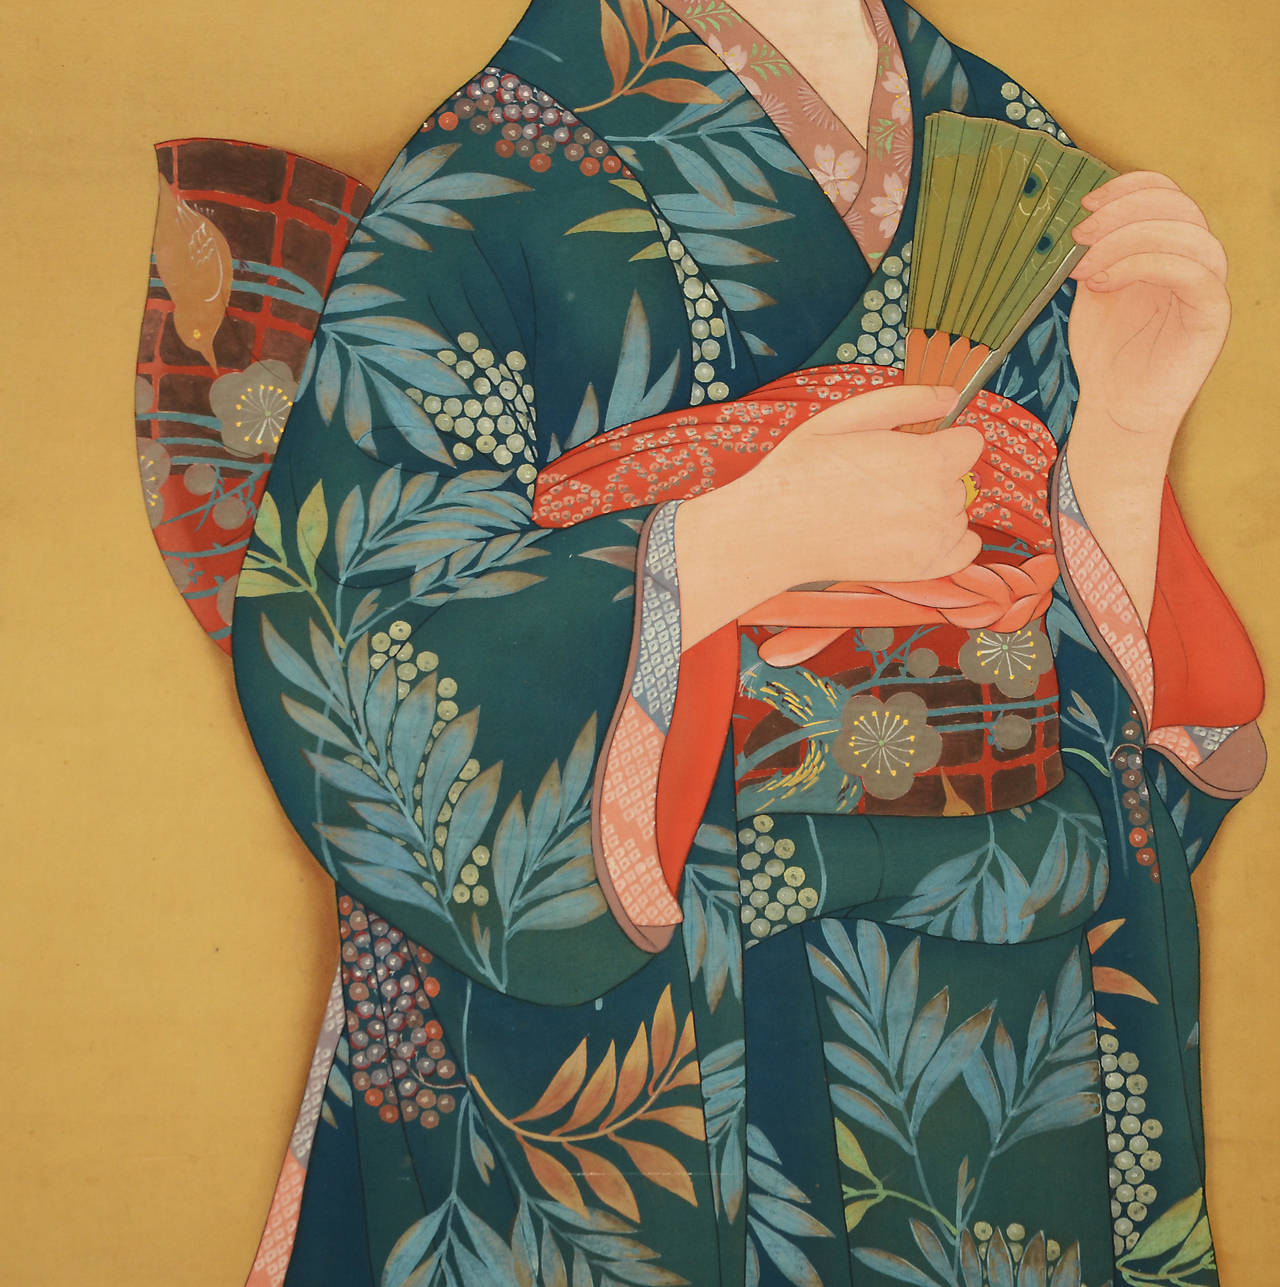 Rare peinture japonaise de style Bijin-ga de la période Taisho représentant une belle femme en kimono d'époque tenant un éventail, vers 1920.

Bijin-ga est un terme japonais utilisé pour décrire les peintures ou les images de belles femmes dans